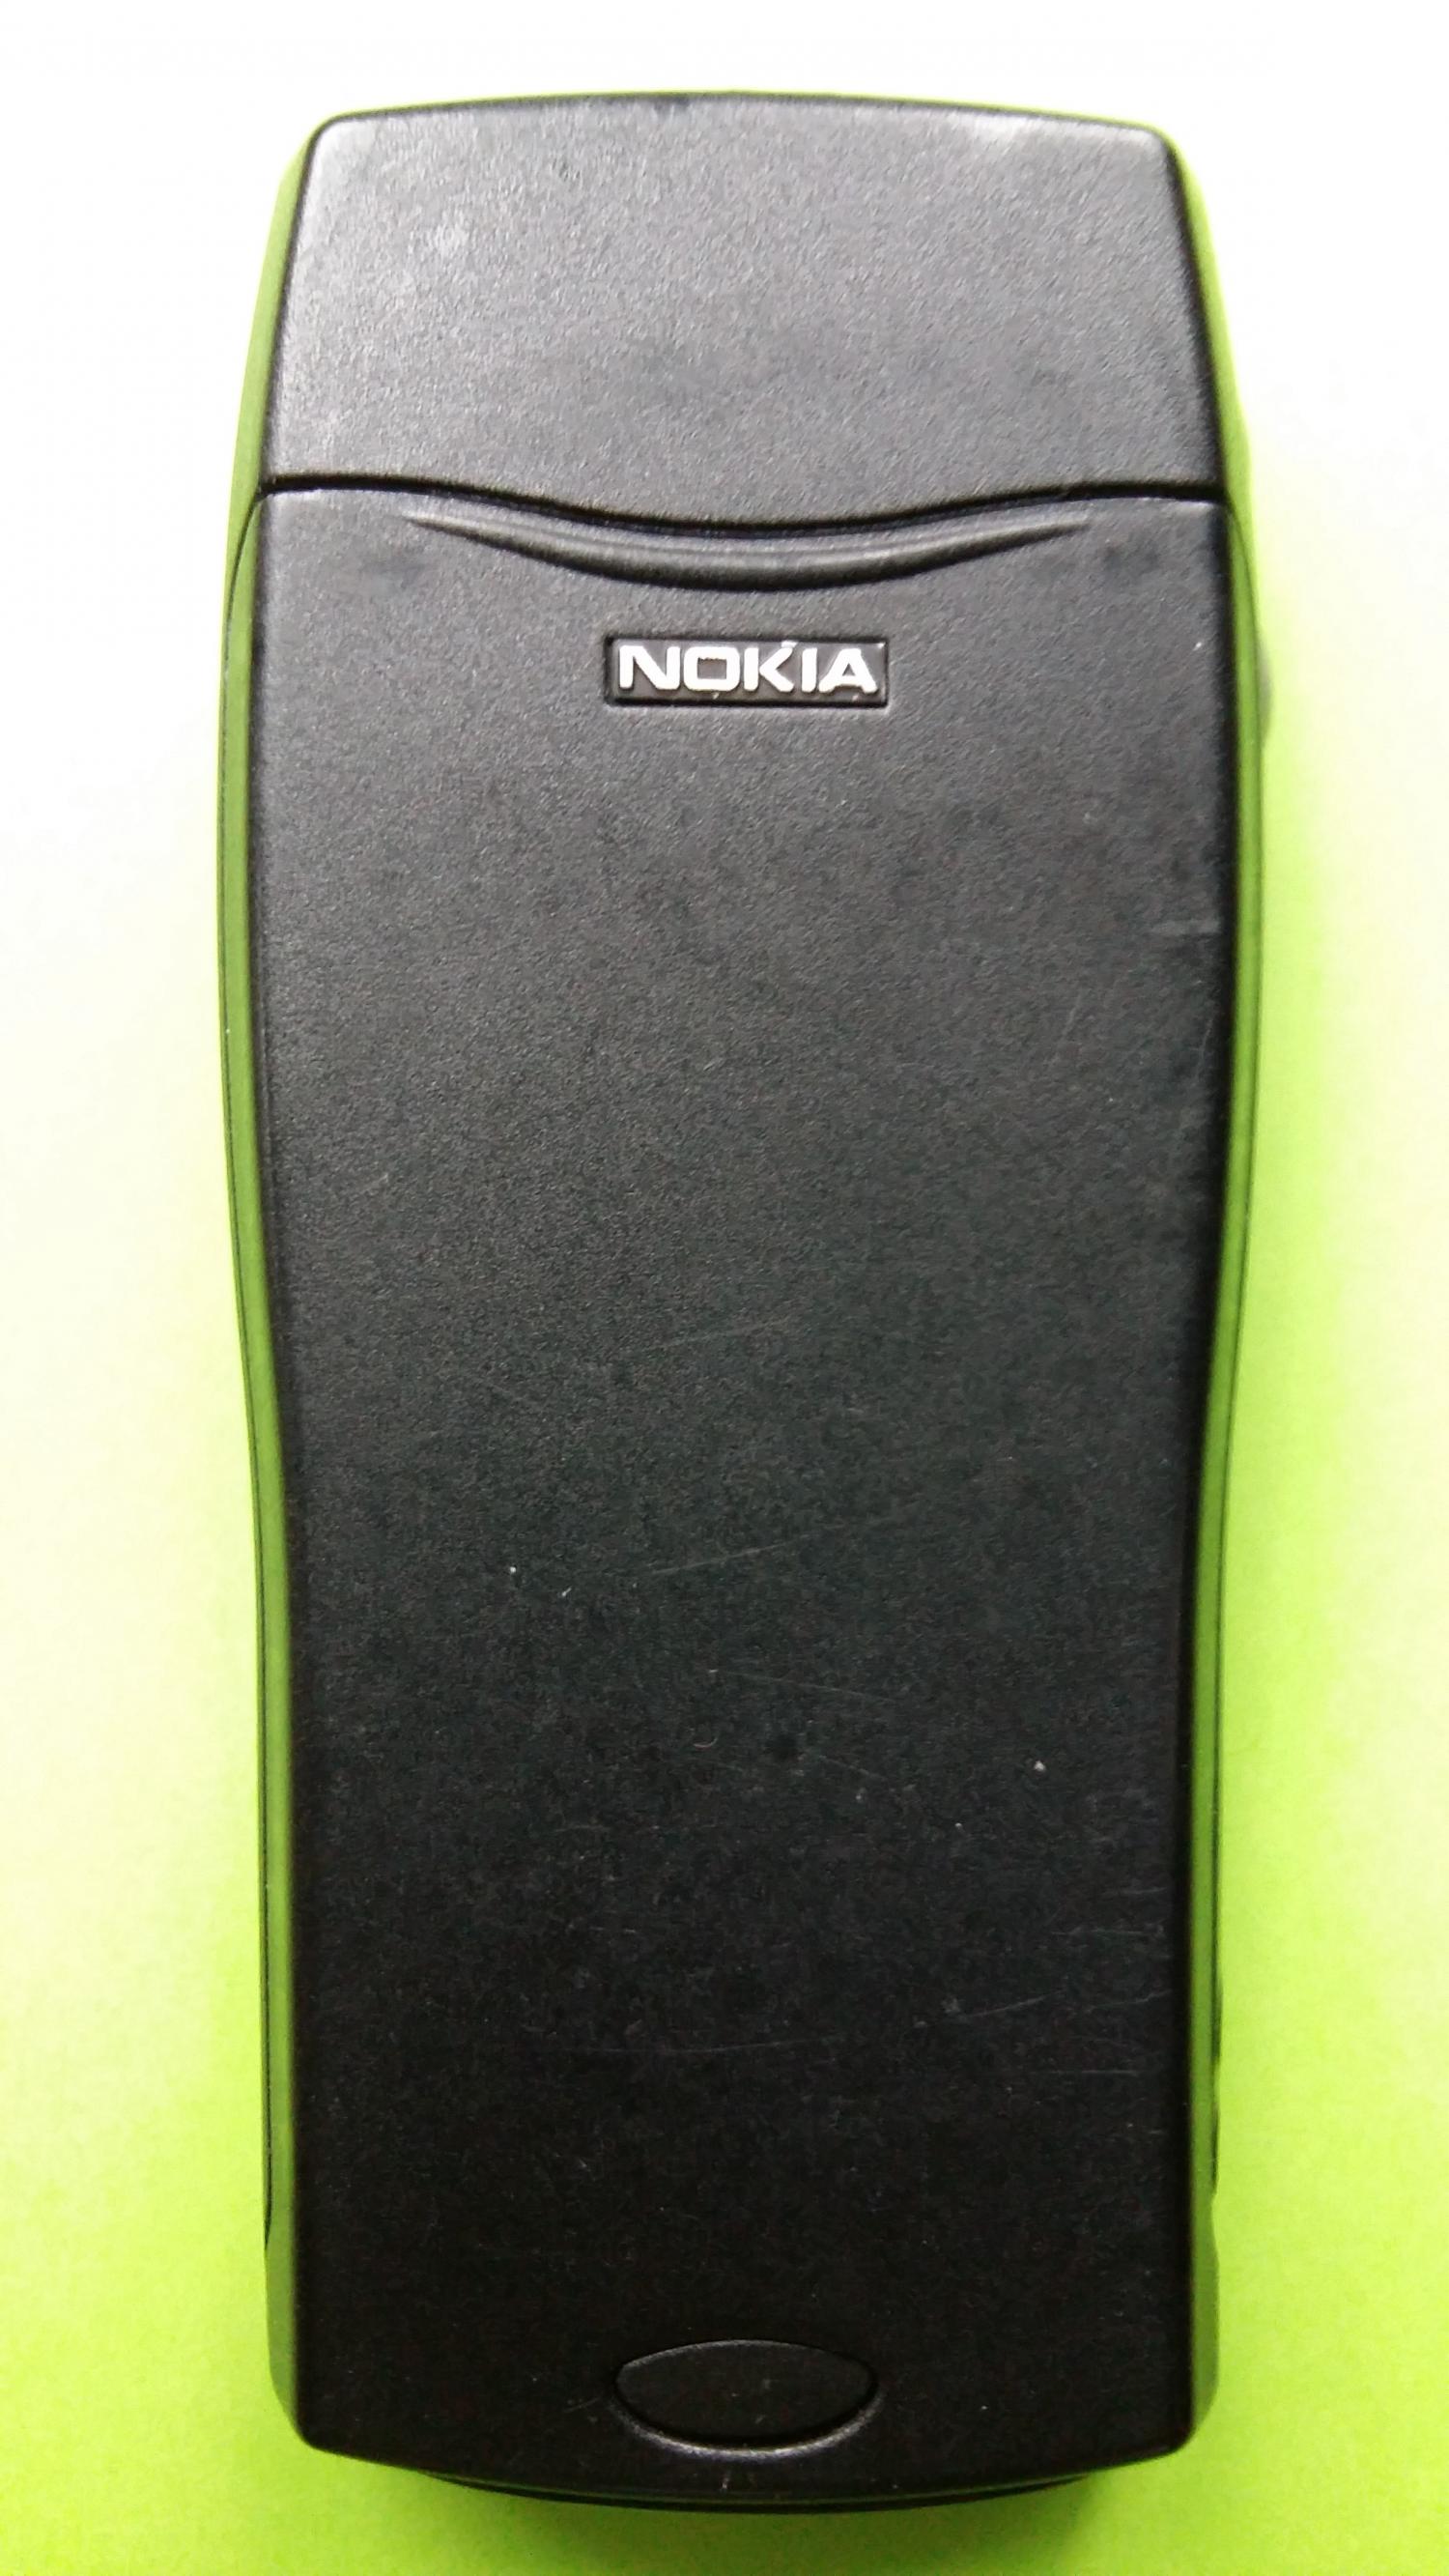 image-7299135-Nokia 8210 (22)2.jpg